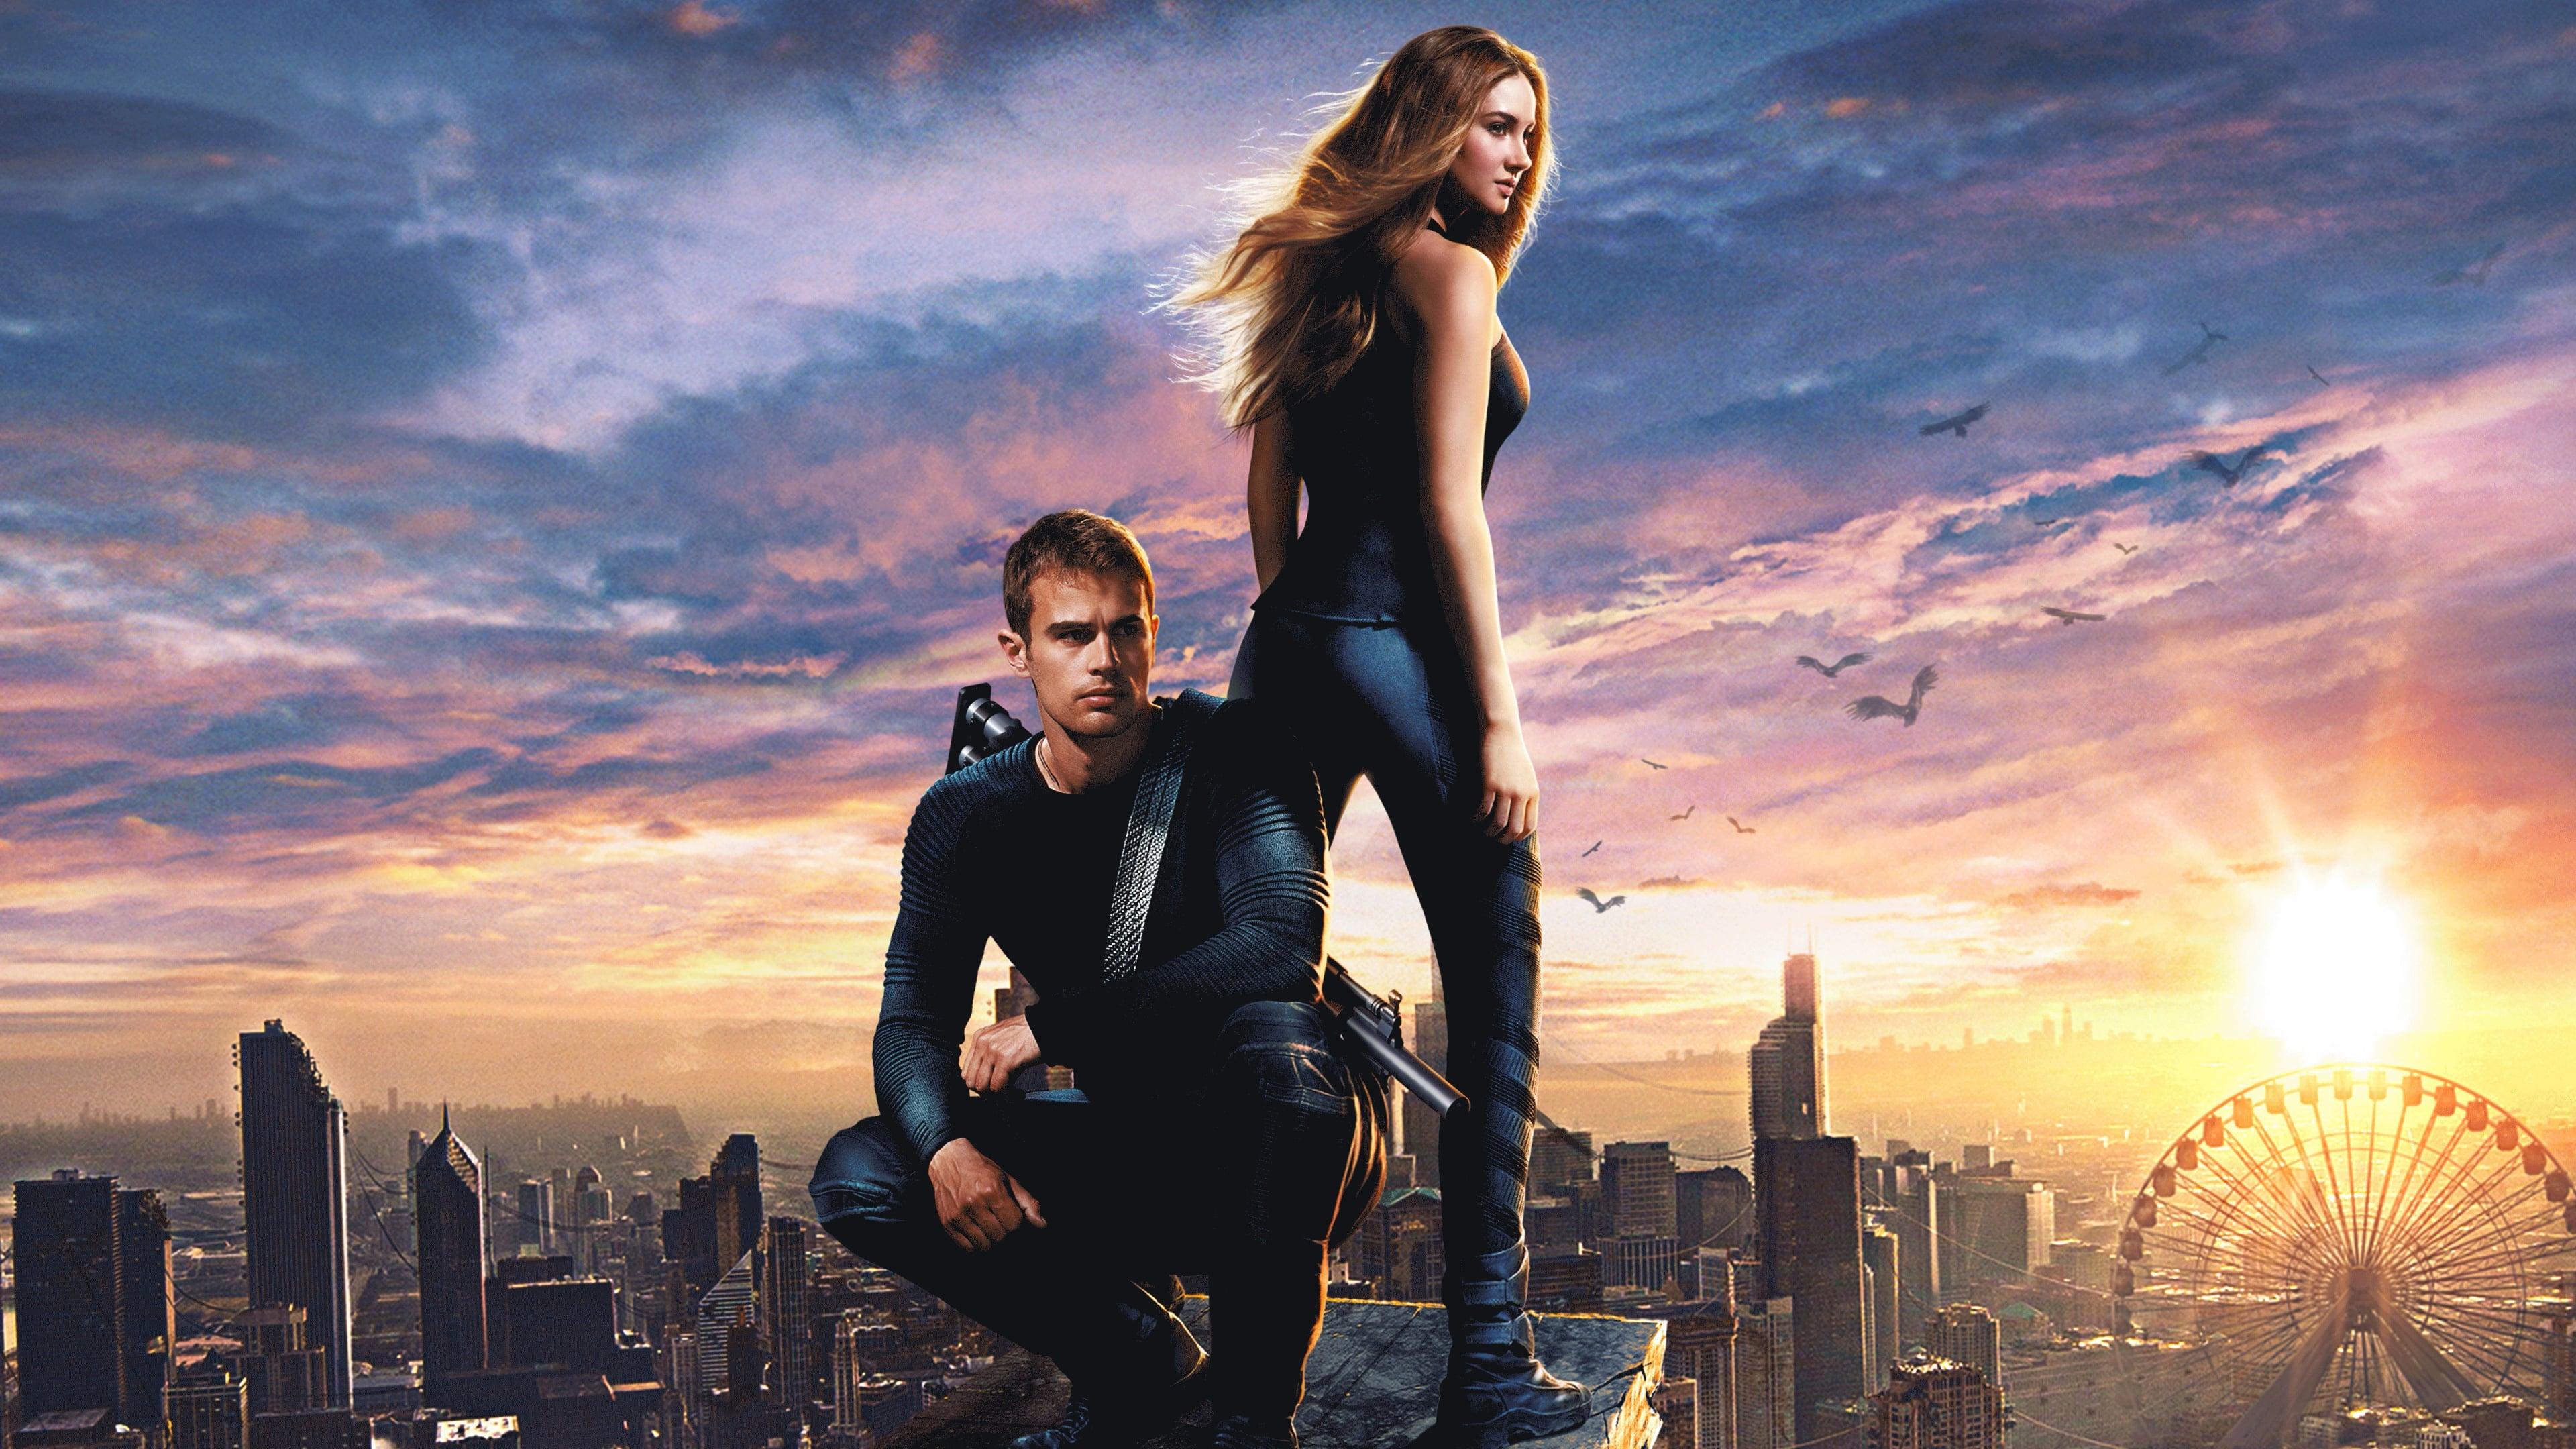 Divergent' MTV VMAs first look - watch